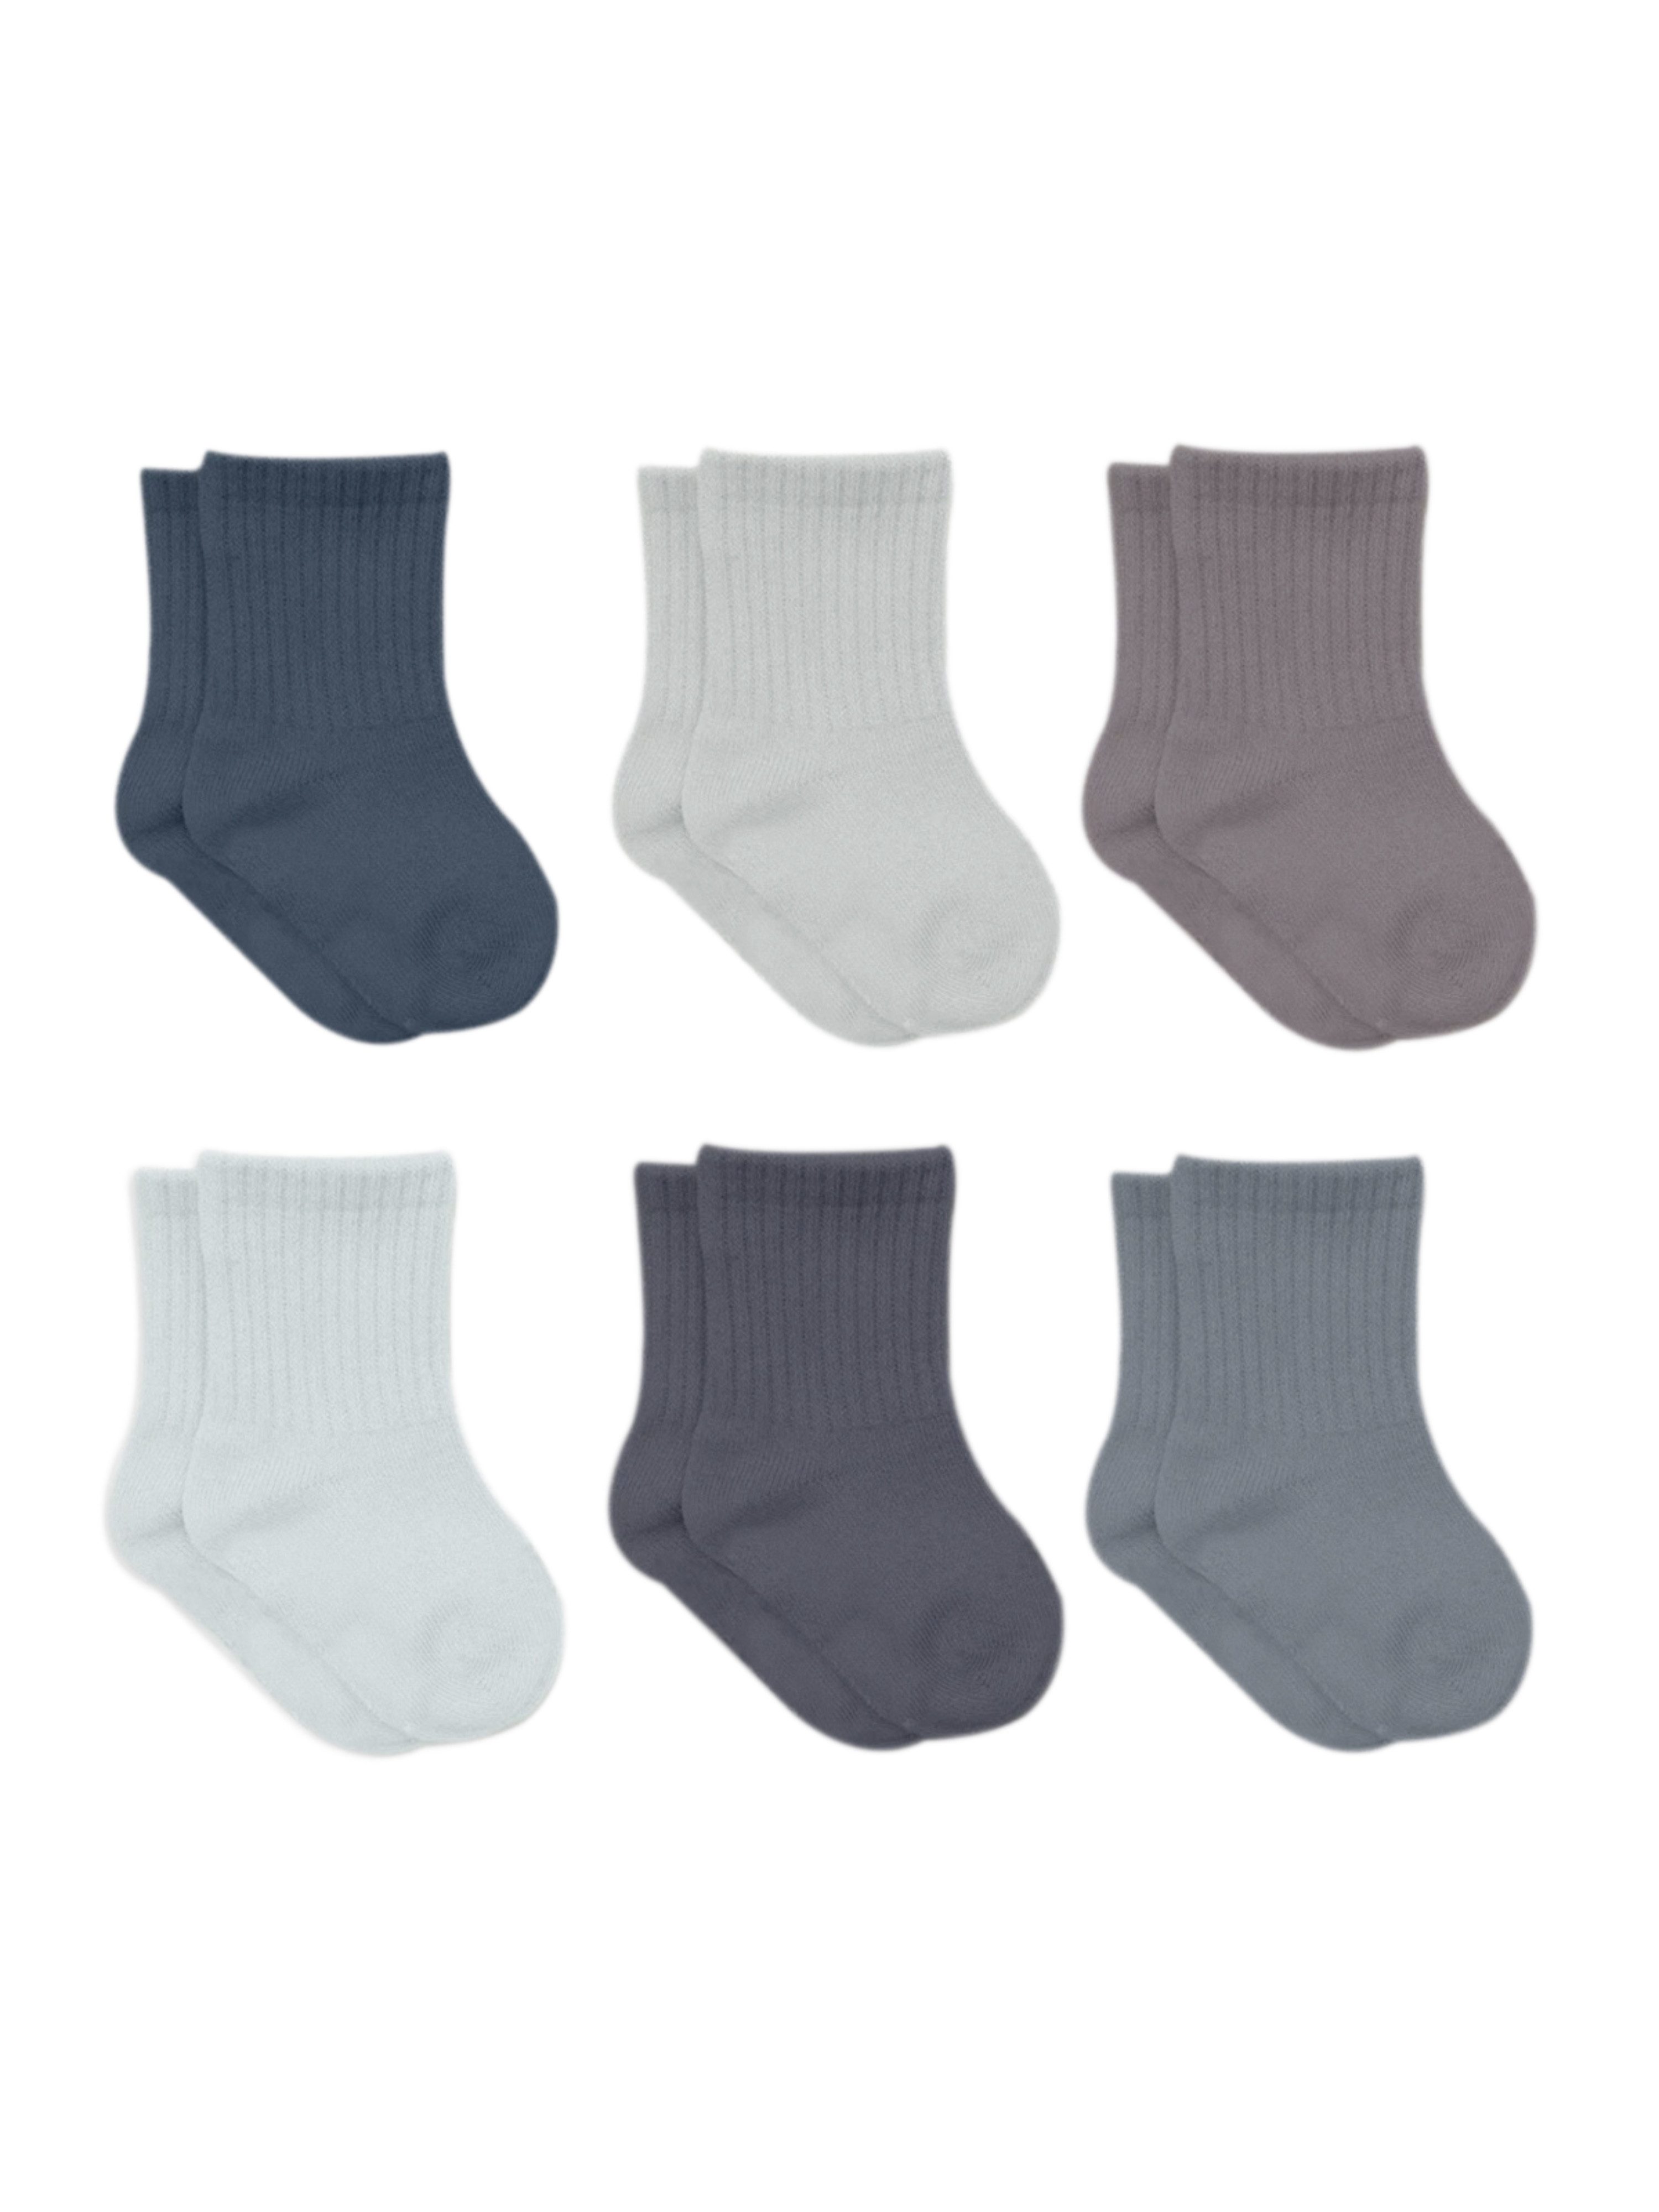 bistyle Socken für Babys Neugeborene Babysocken Jungen Mädchen Kurzsocken (Set, 6-Paar, 6er-Pack) gerippt Bio-Baumwolle GOTS zertifiziert 0-6 Monate bis 2-3 Jahre